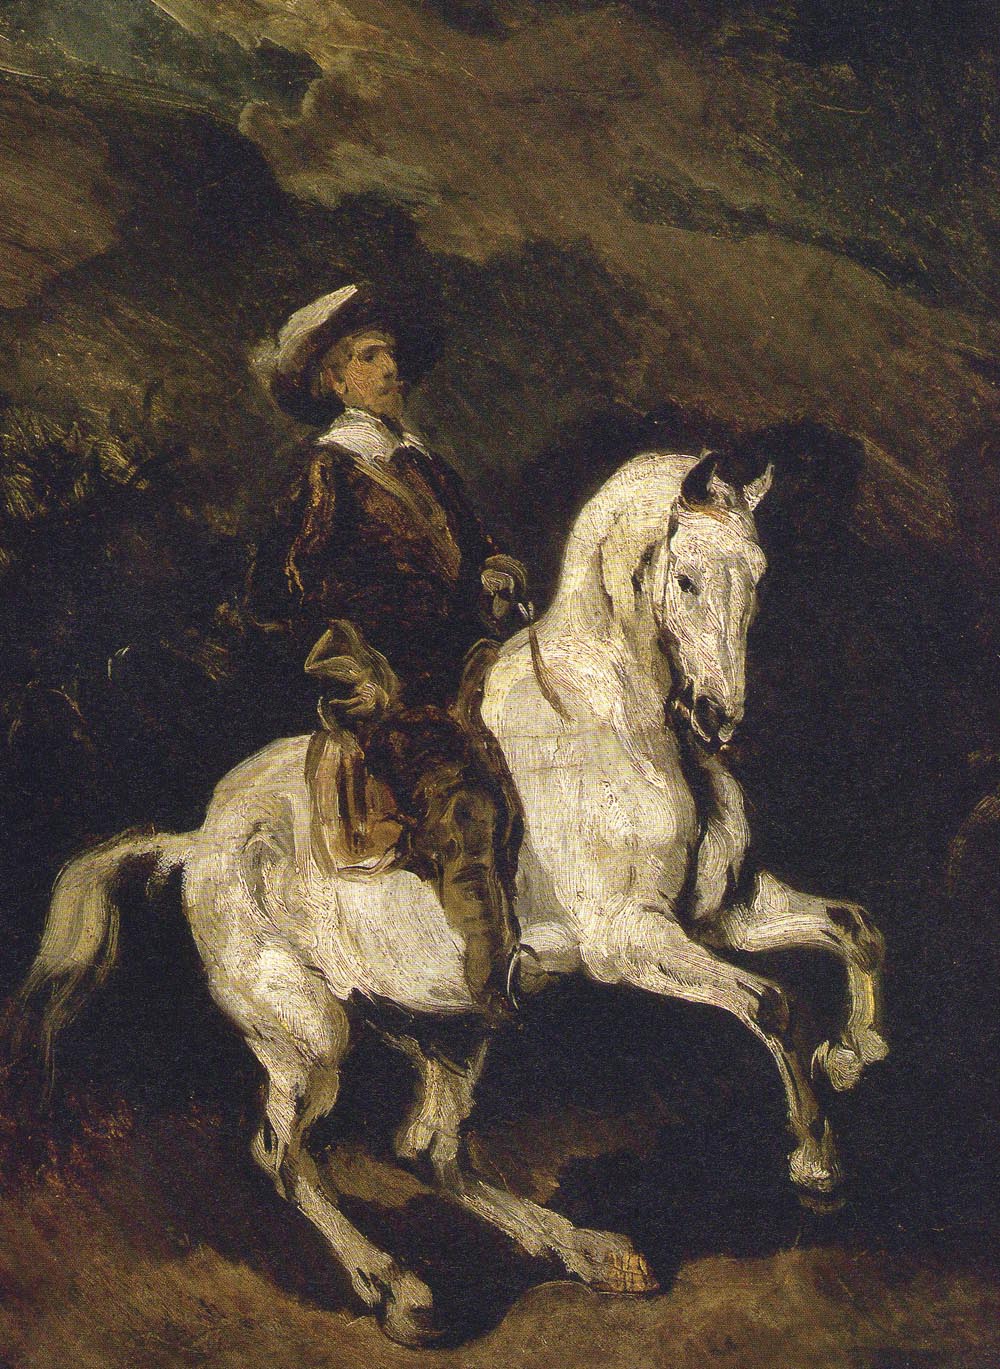 Reiter on Horseback